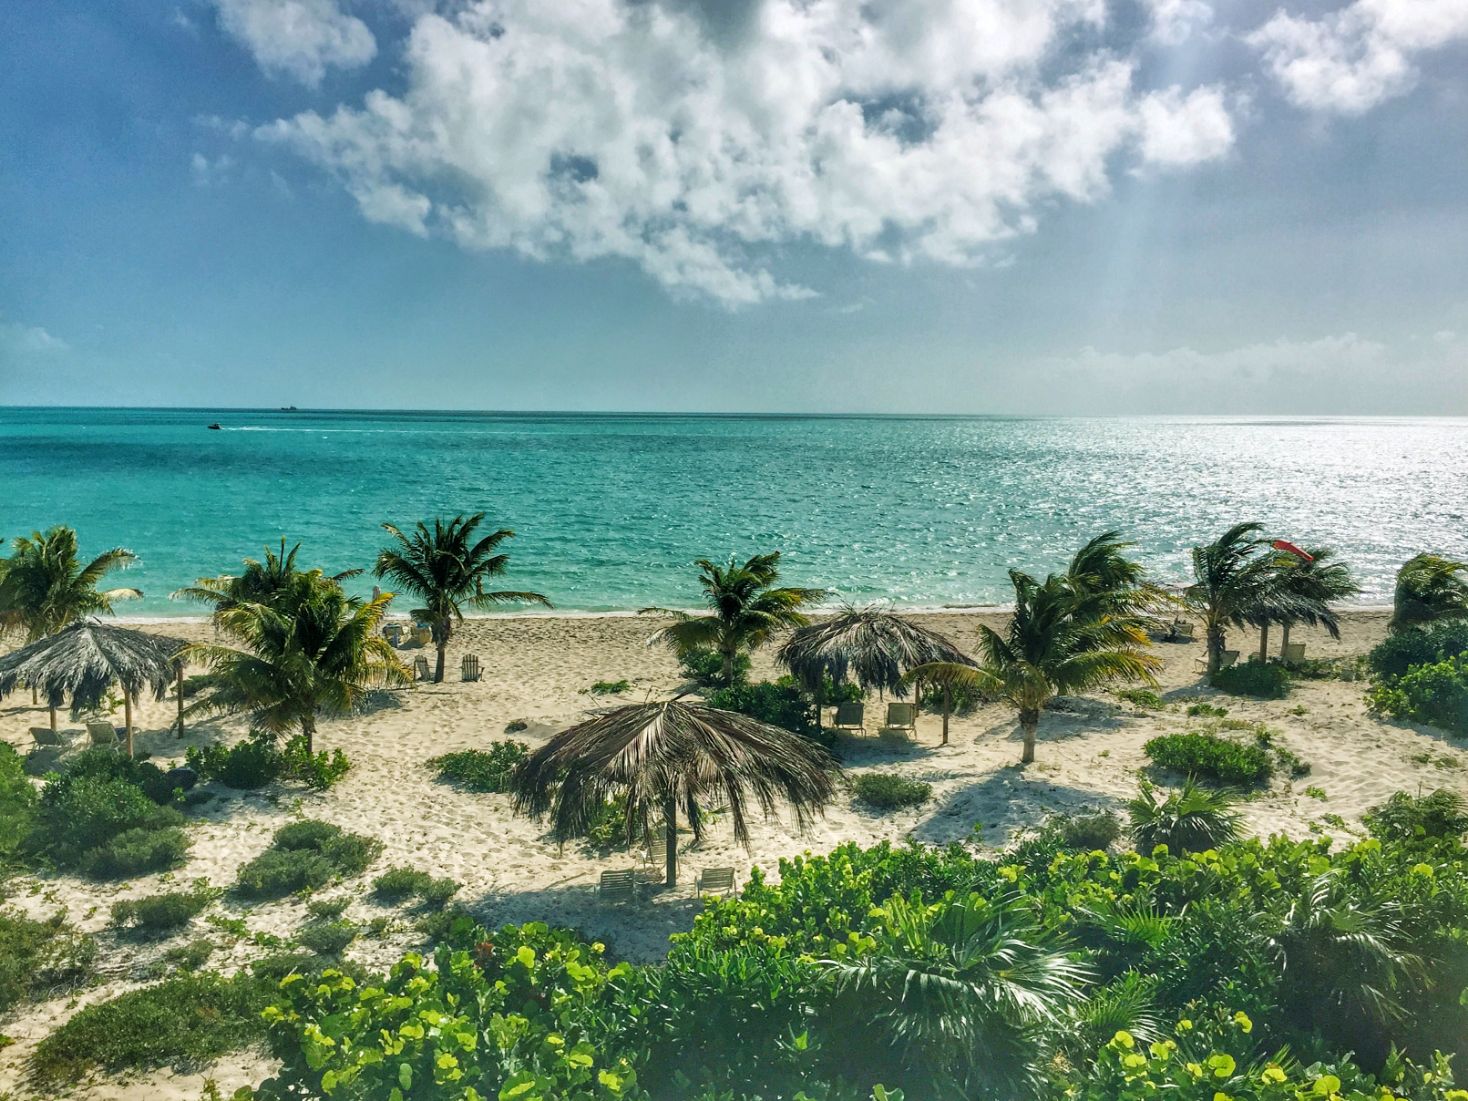 Turks and Caicos vacation rentals